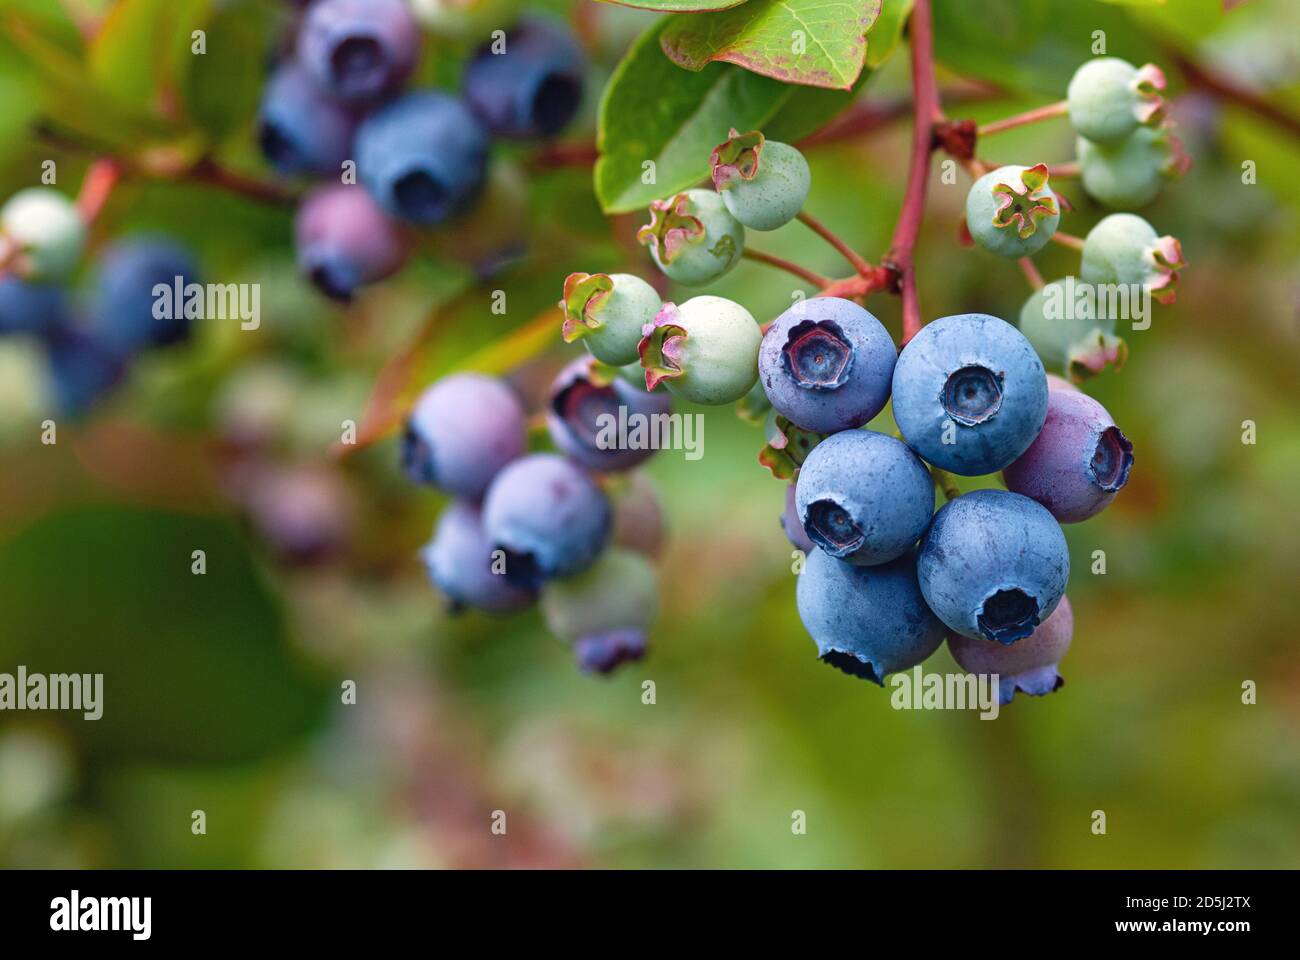 Blue huckleberry bush (Vaccinium corymbosum ) with ripening berries Stock Photo